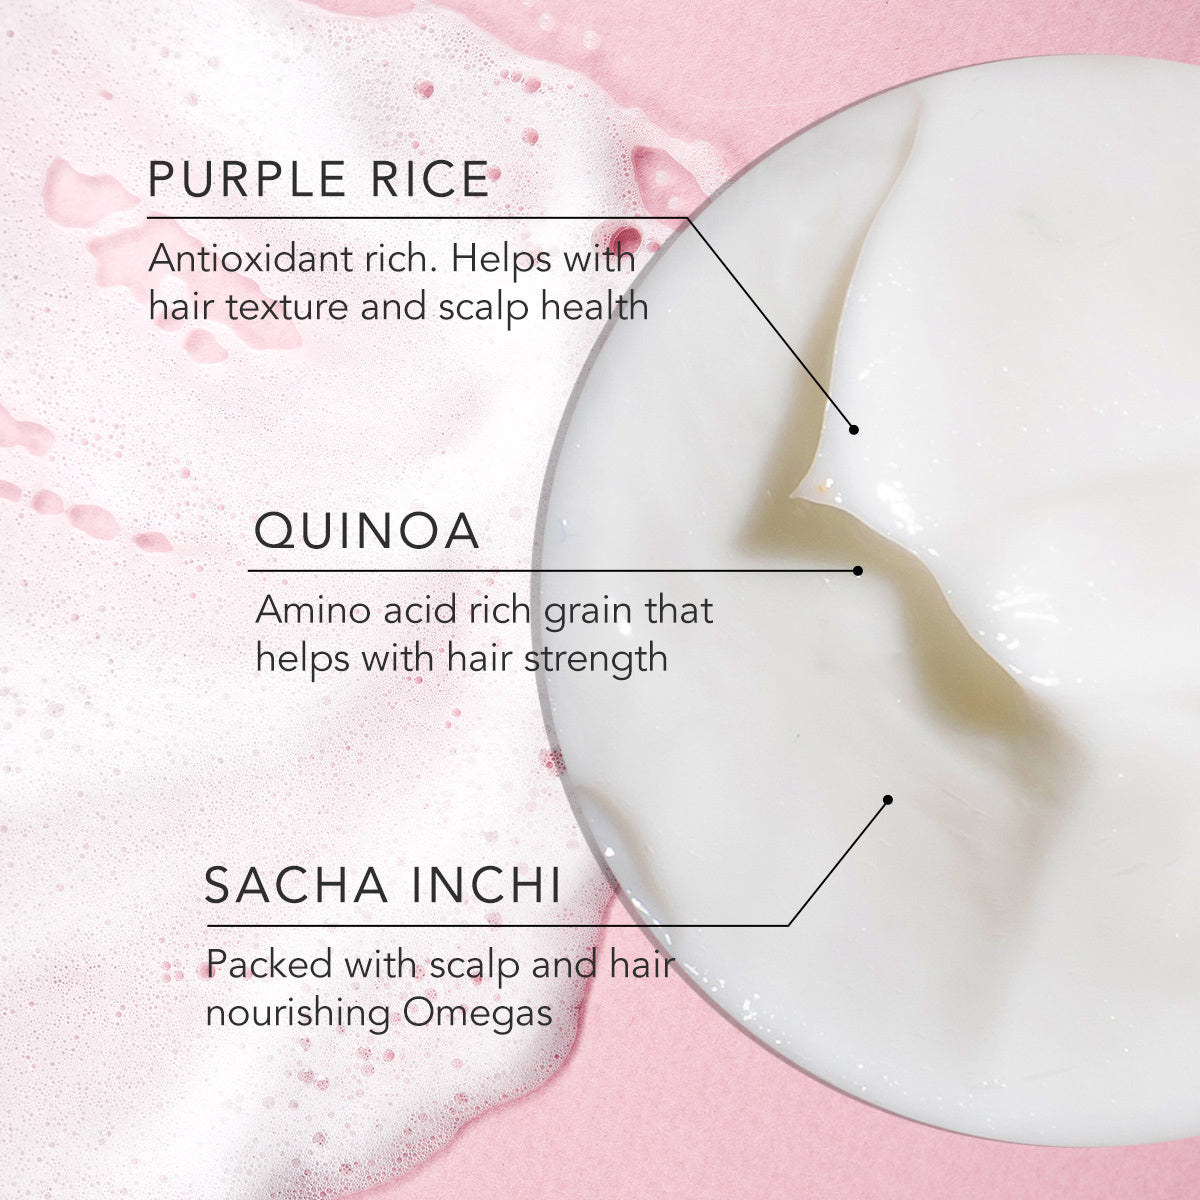 Daughter Earth Purple Rice + Quinoa The Shampoo & The Conditioner - Combo